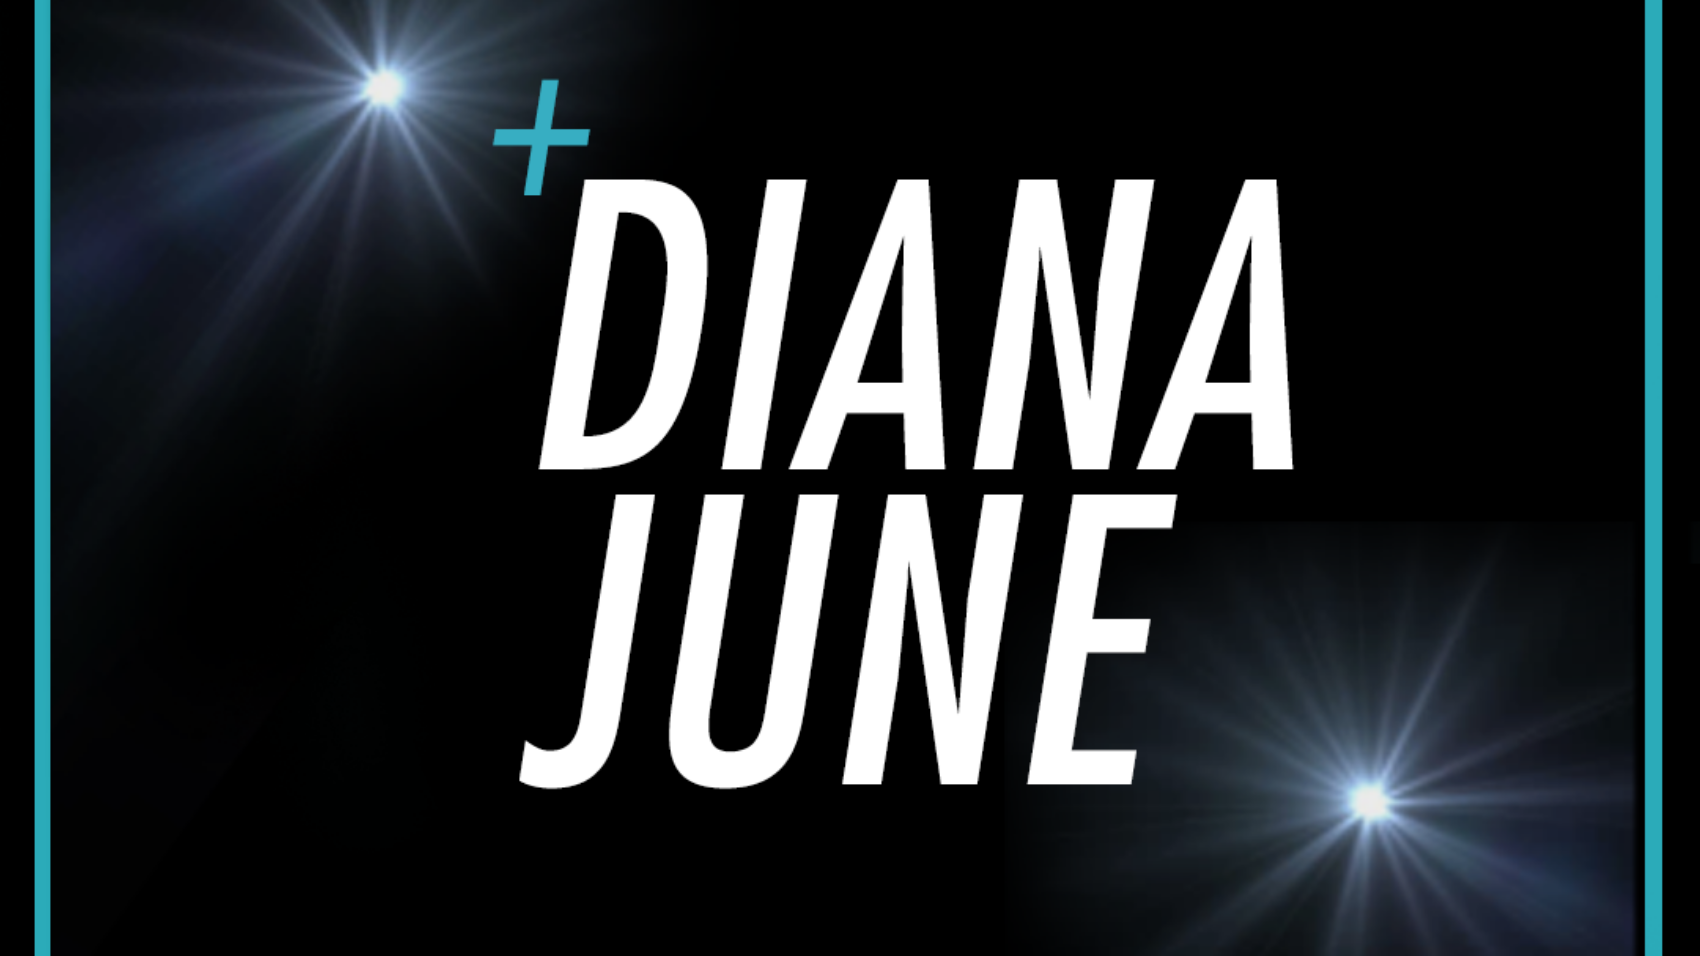 Diana-June